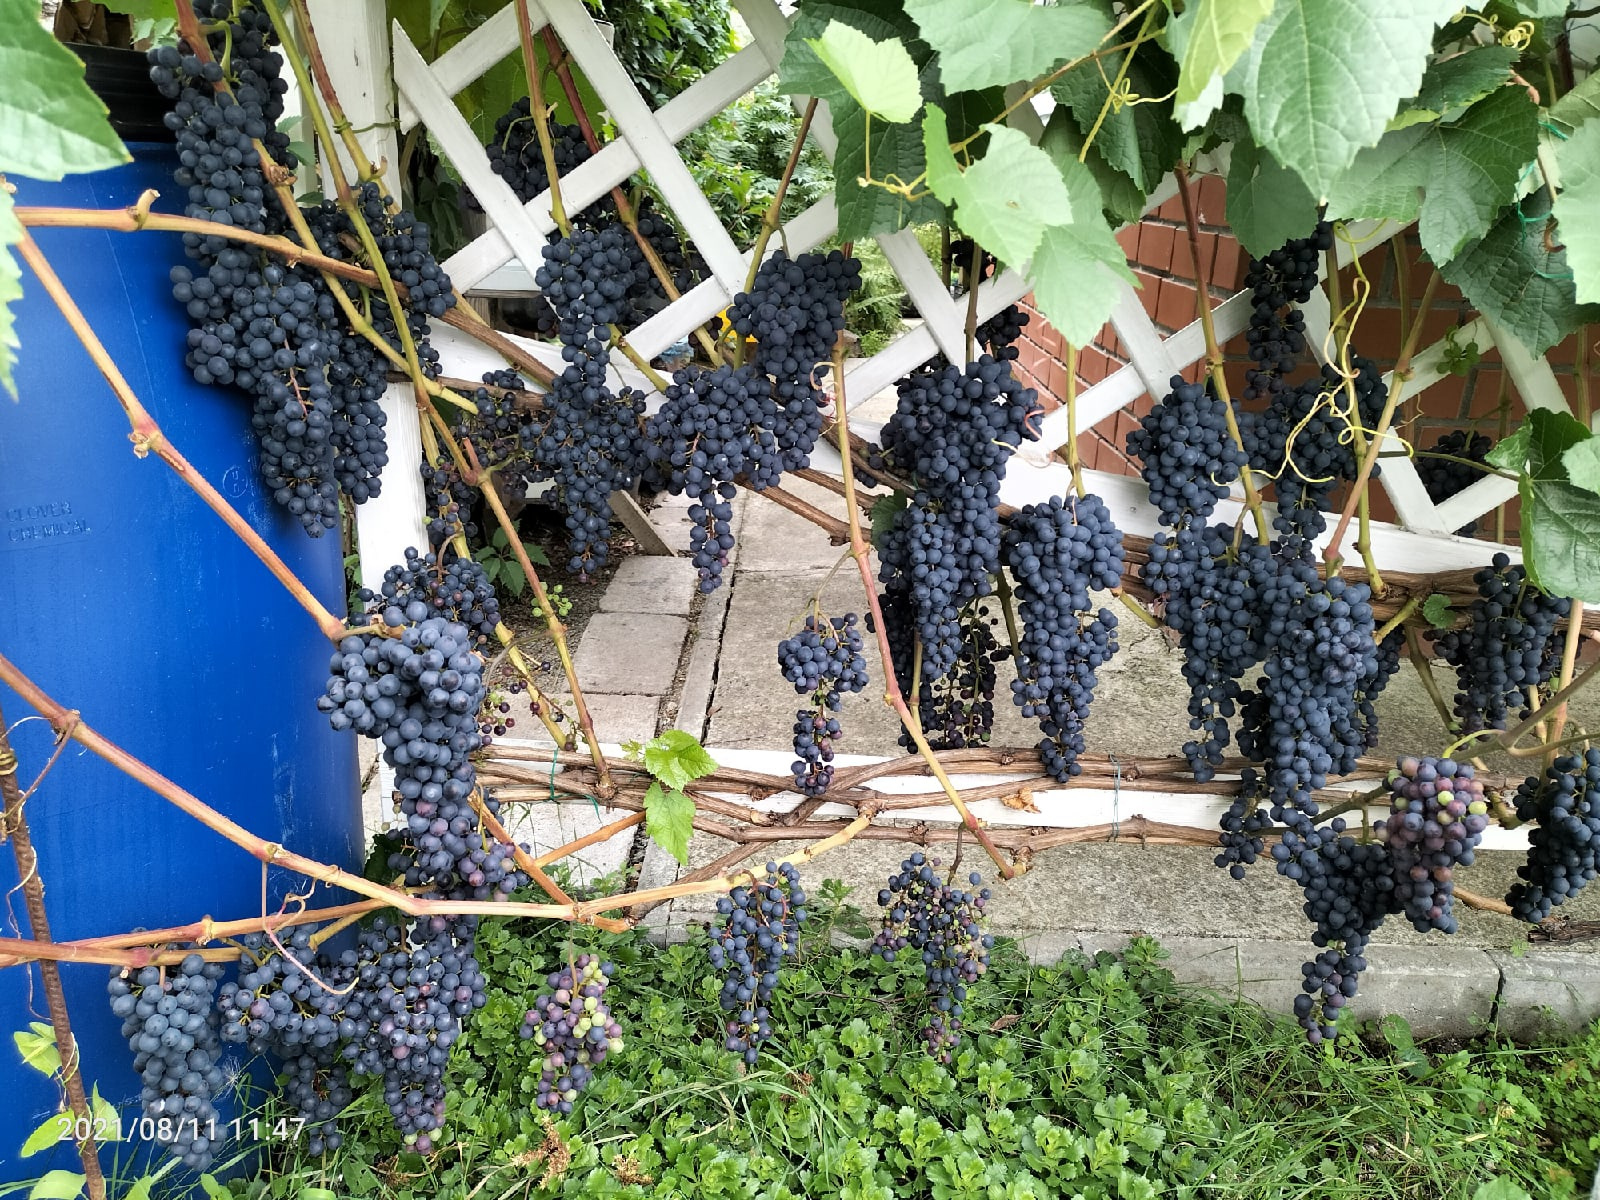 И напоследок — еще одно подтверждение того, что виноград можно не только покупать в магазине, но и выращивать на даче